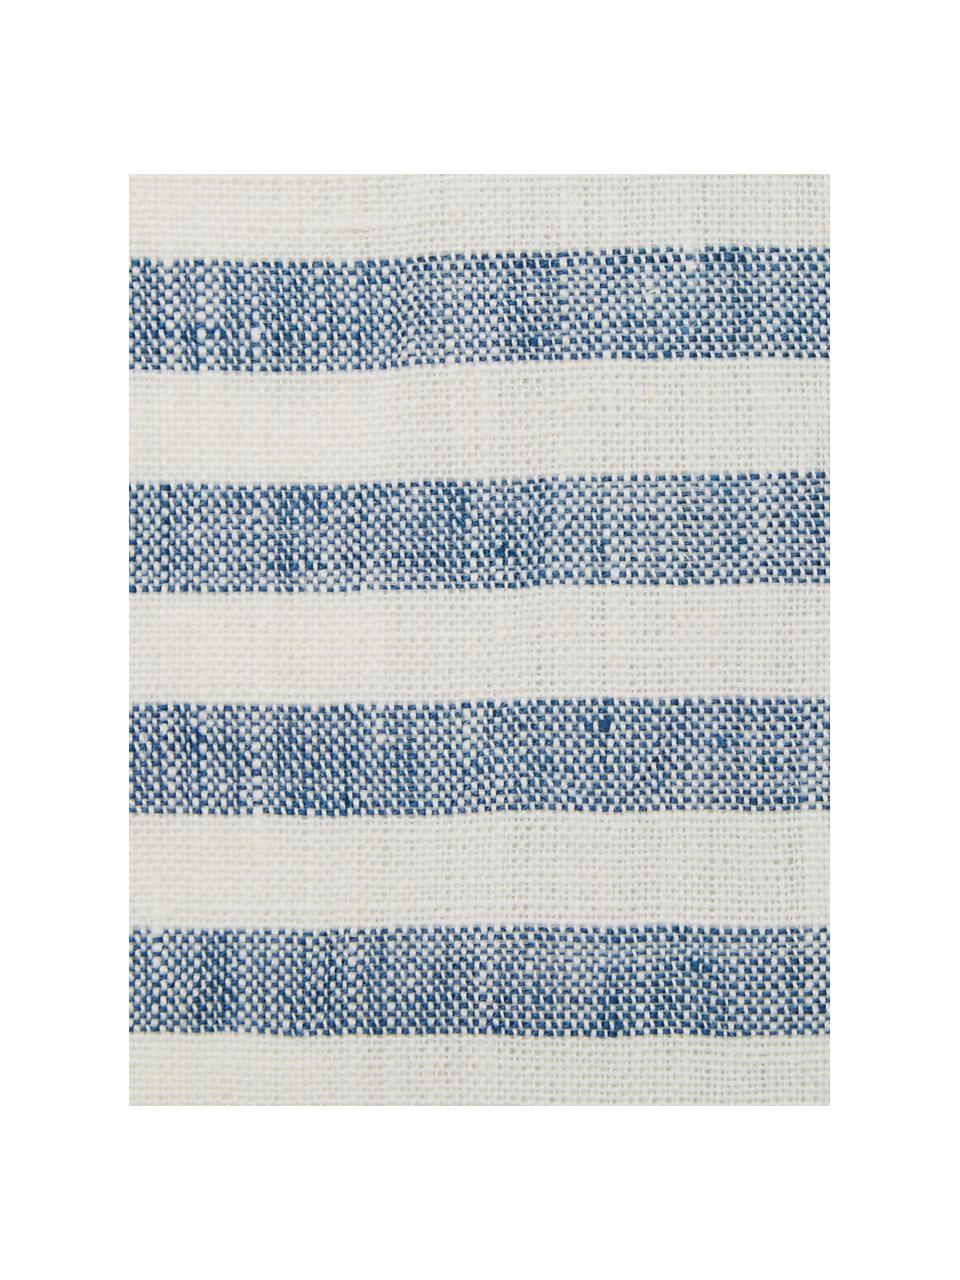 Leinen-Servietten Solami, 6 Stück, Leinen, Hellblau, Weiß, 46 x 46 cm